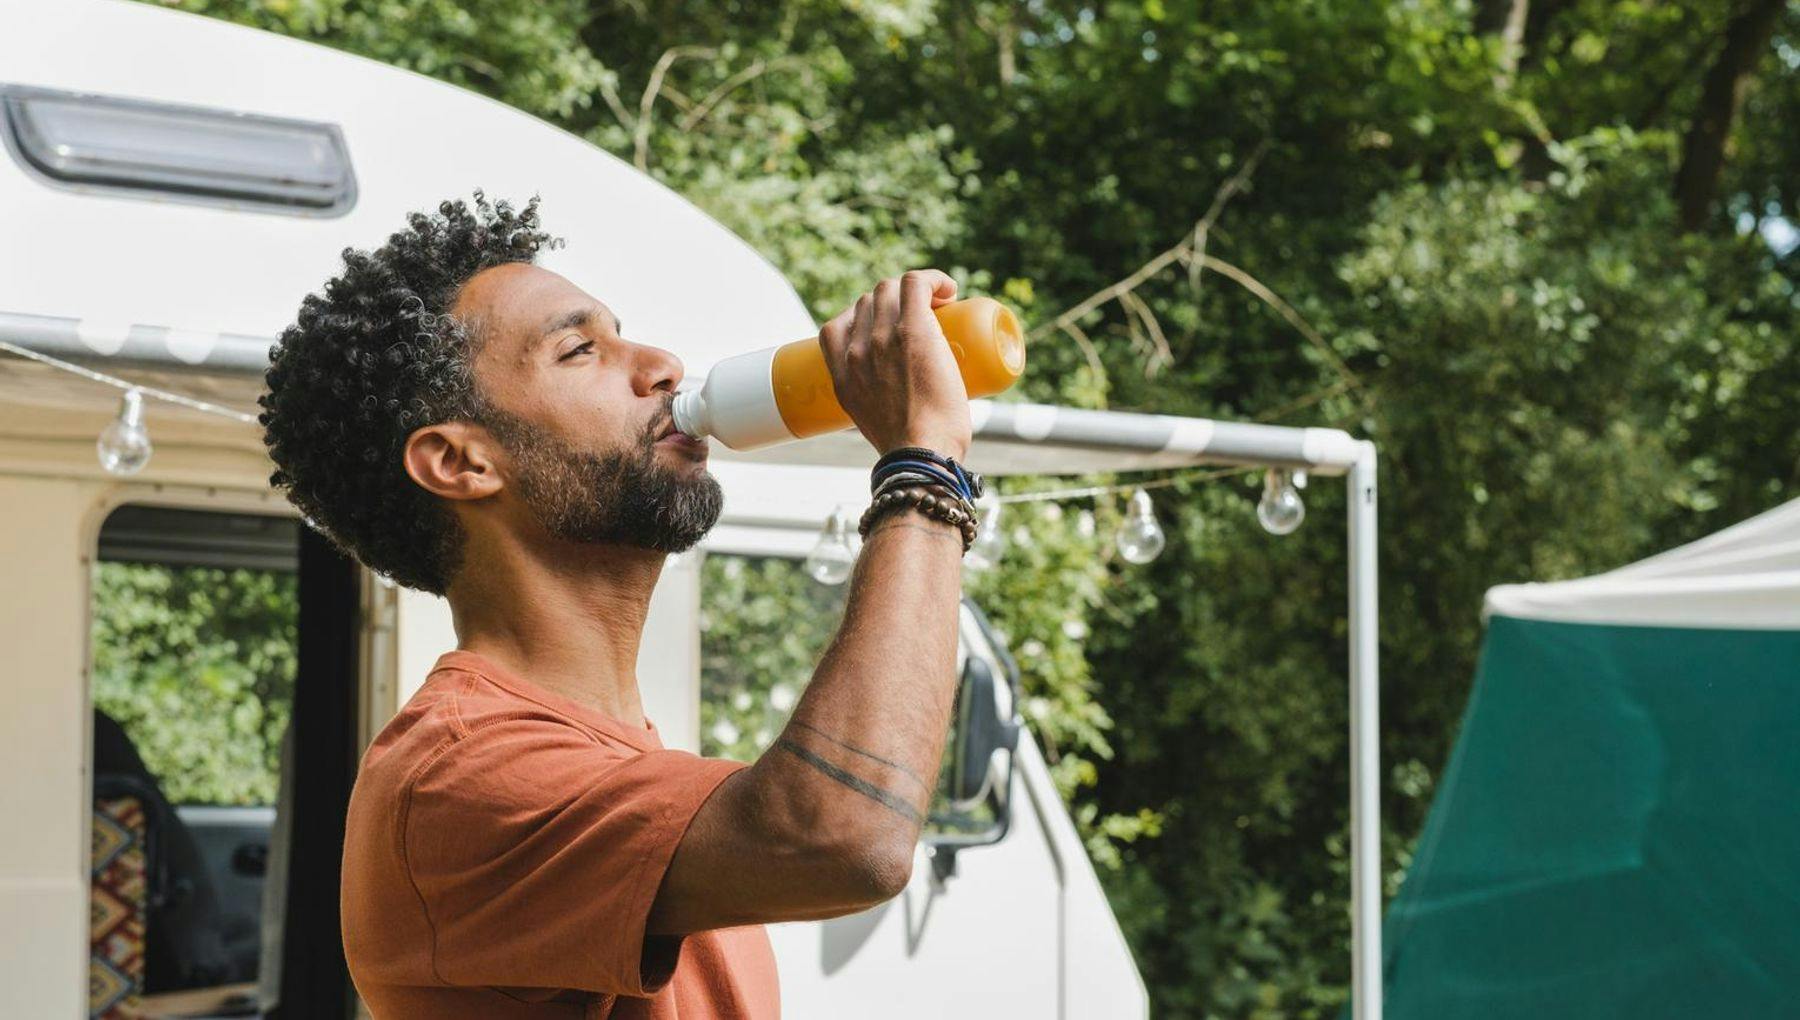 Man drinks from a Dopper bottle harvest sun